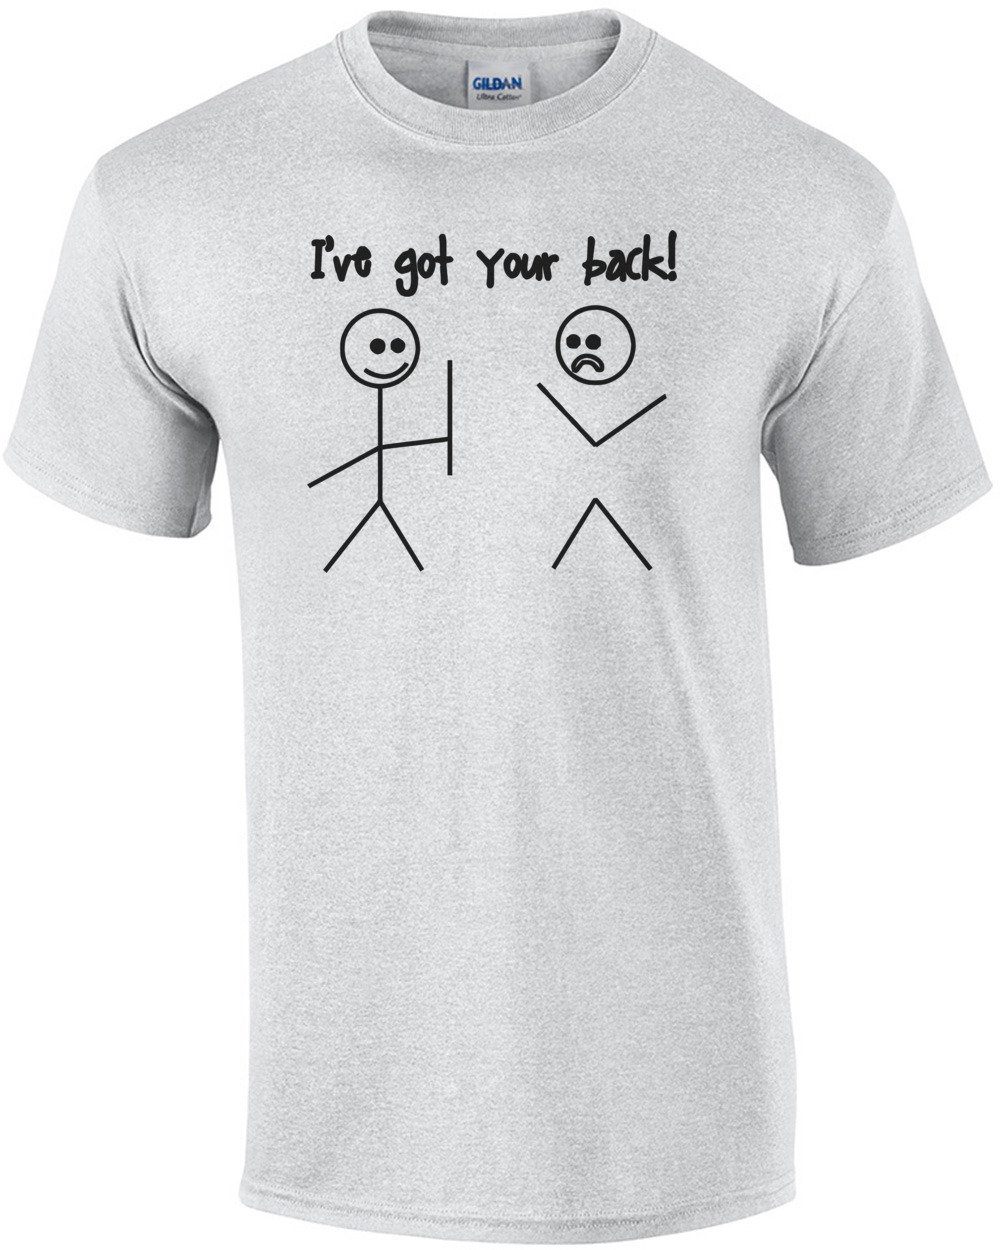 I've Got Your Back Shirt | eBay